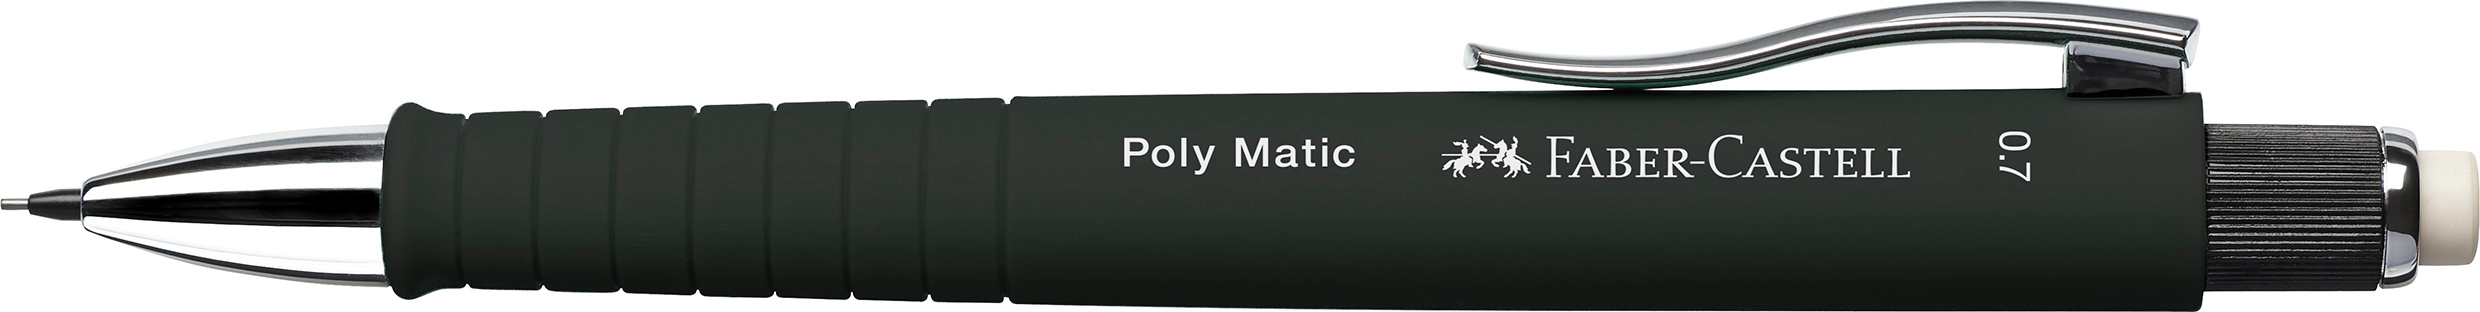 FABER-CASTELL Porte-mine Poly Matic 0.7mm 133353 noir noir